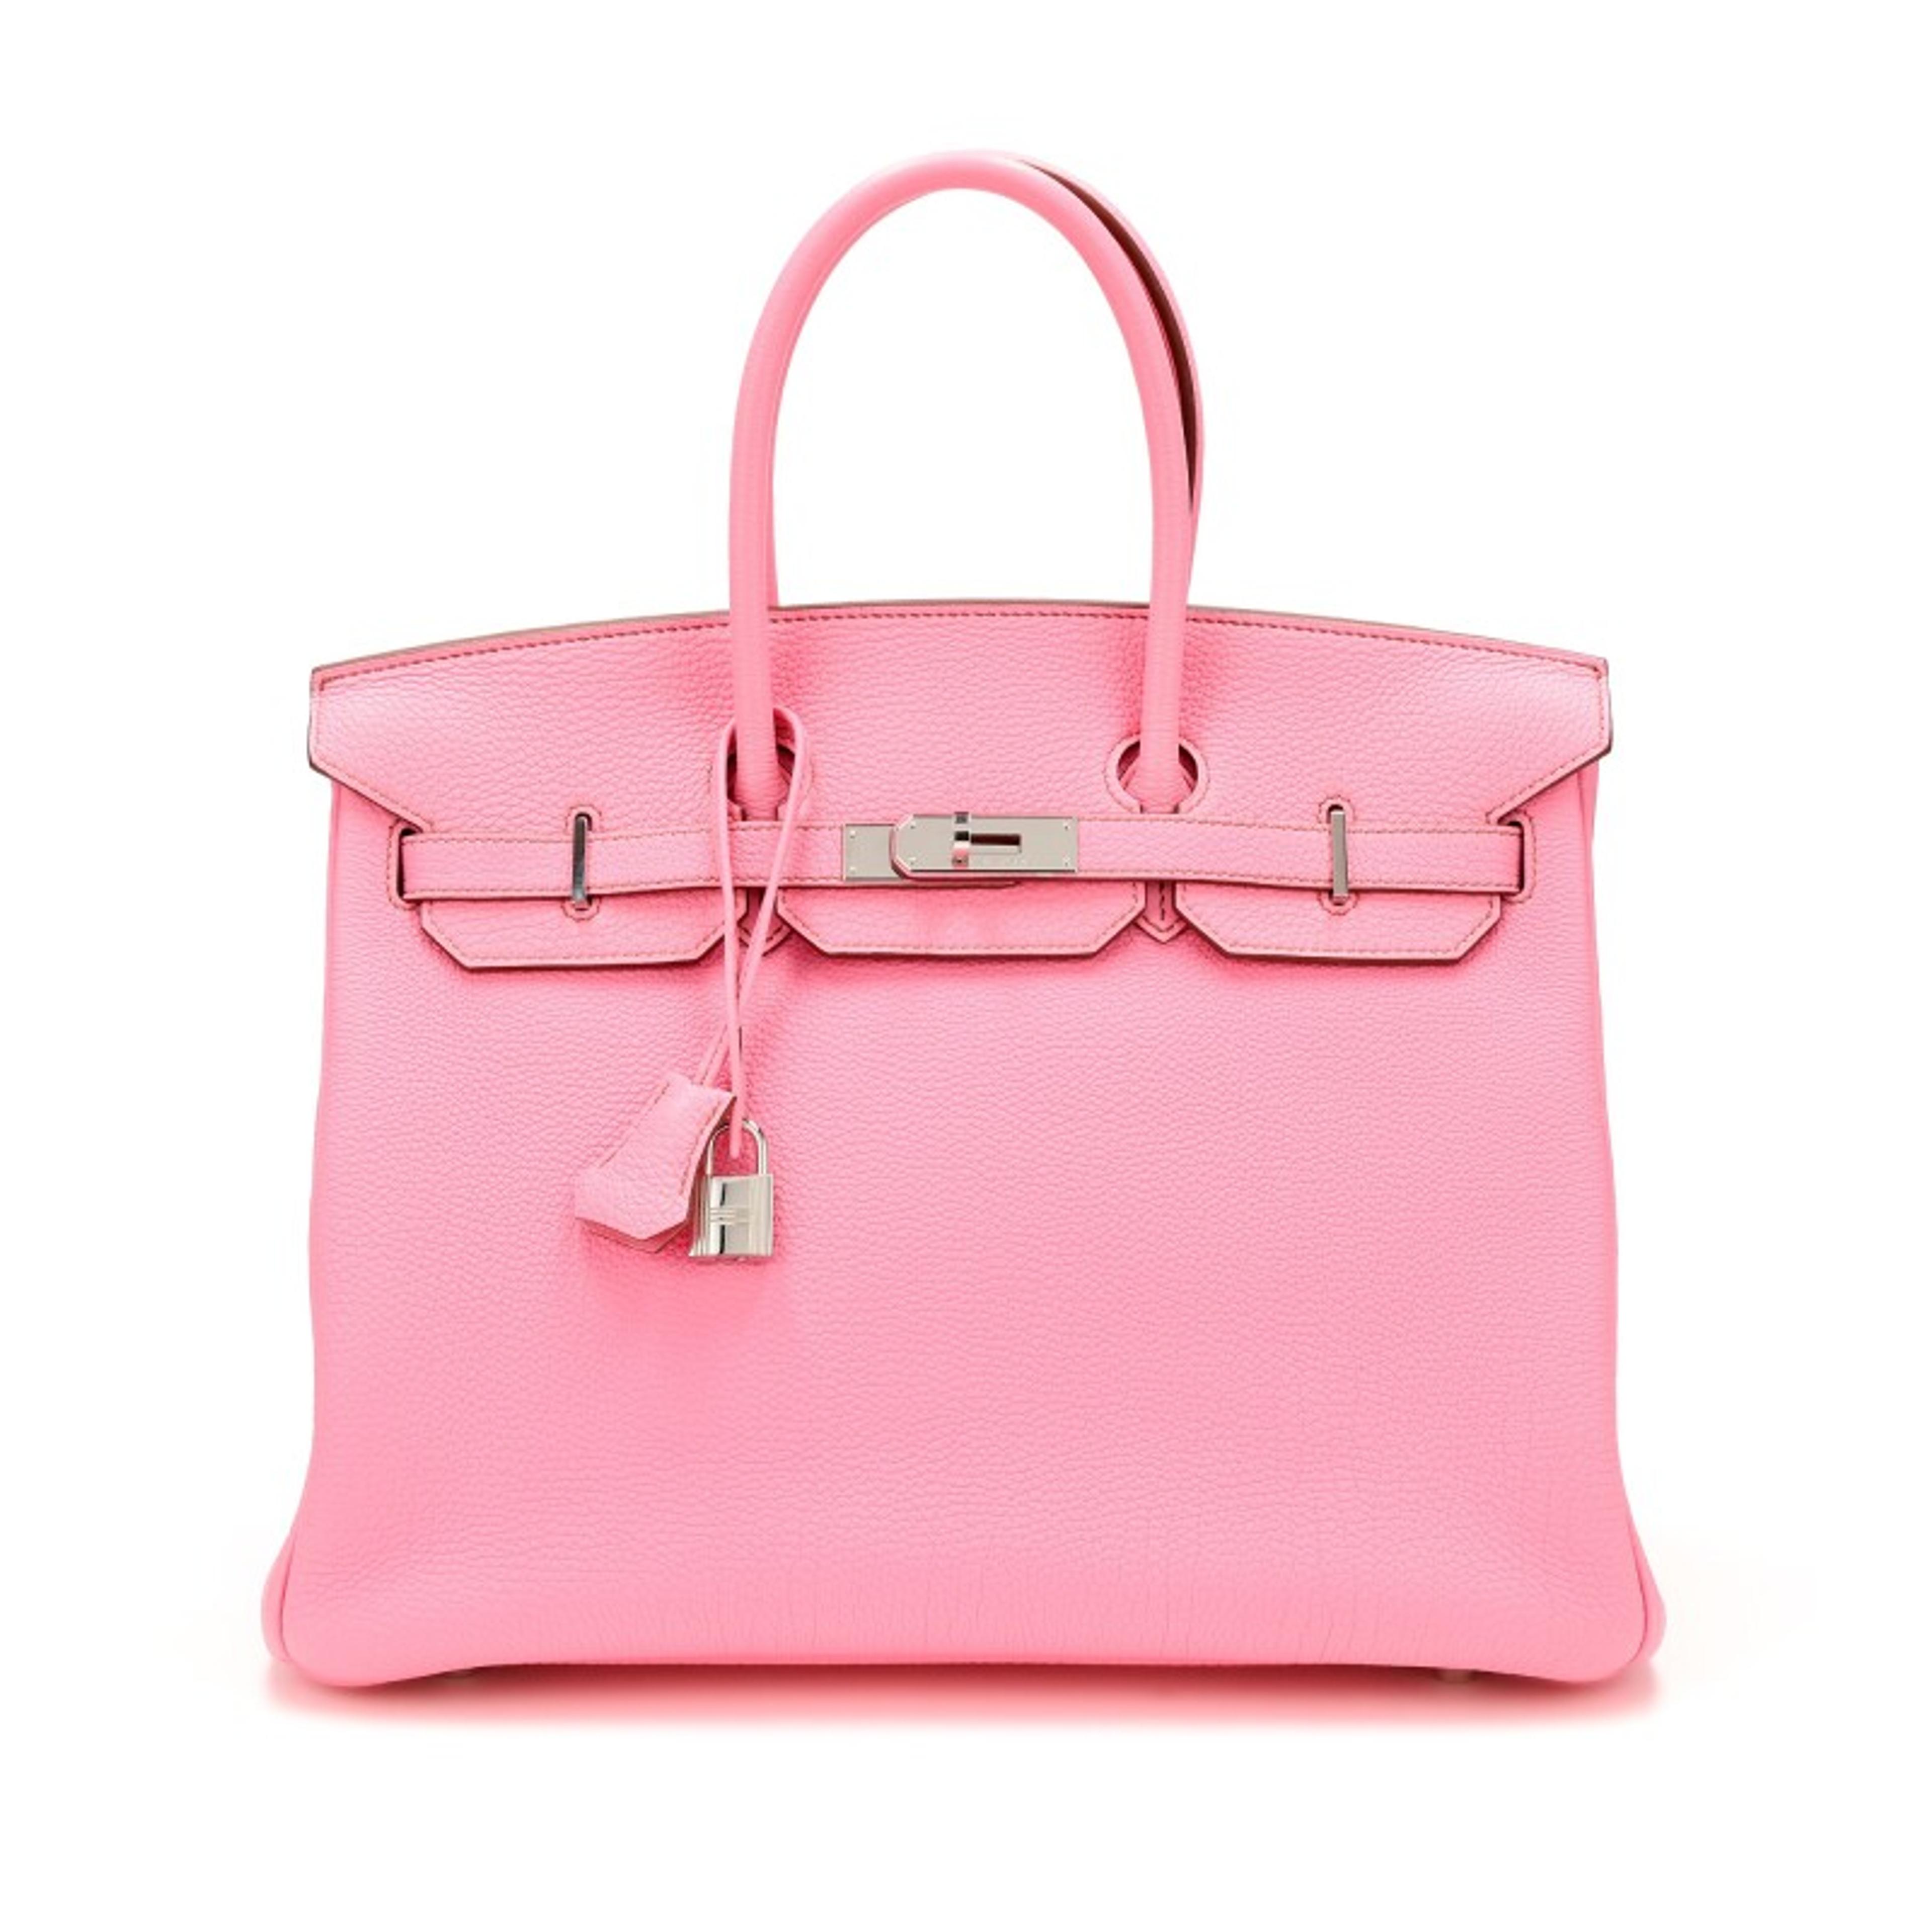 Hermès Bubblegum Pink 5P Togo Birkin 35 Palladium Hardware, 2010 Available For Immediate Sale At Sotheby’s